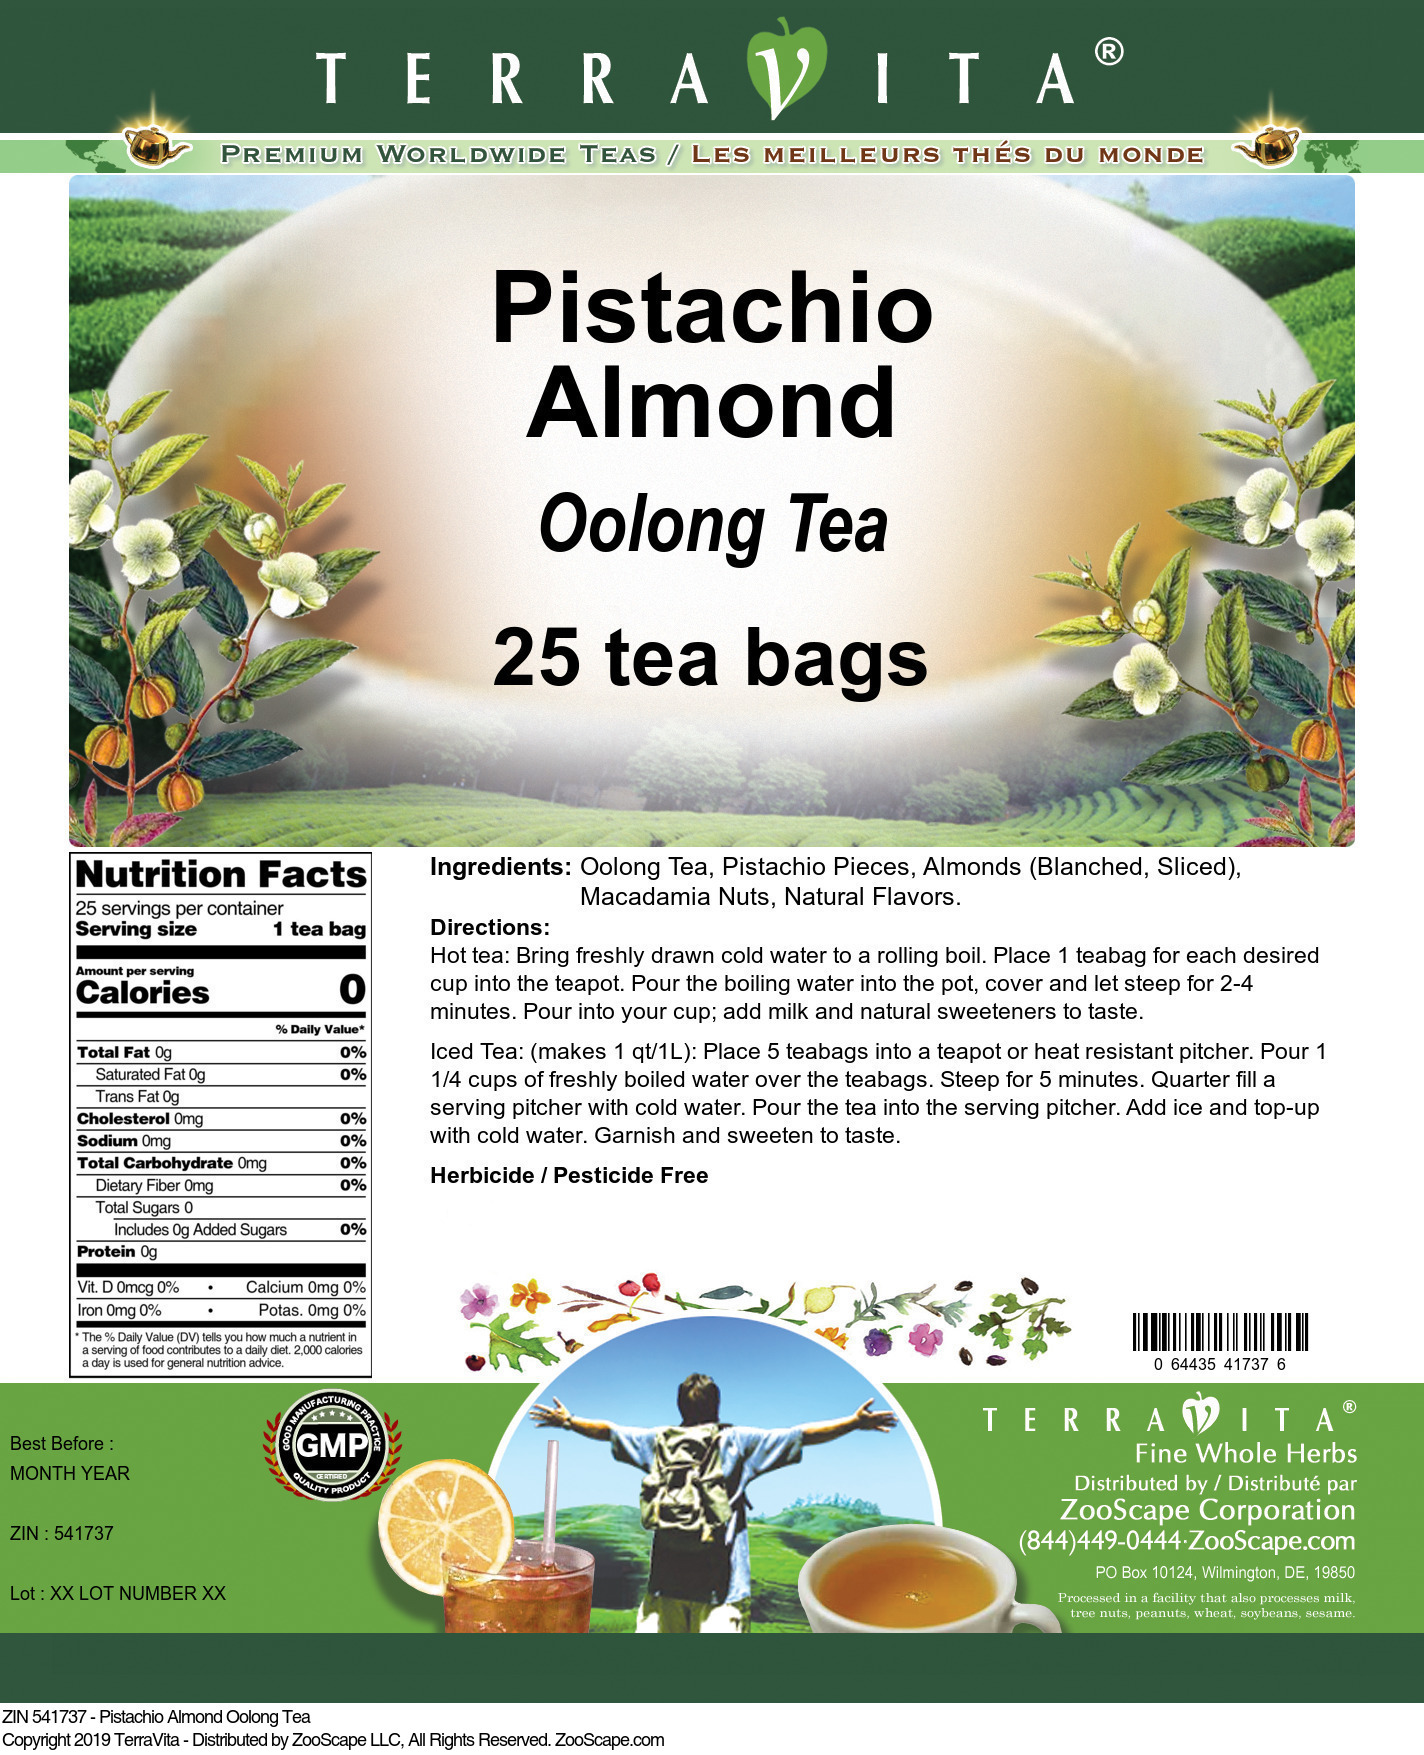 Pistachio Almond Oolong Tea - Label